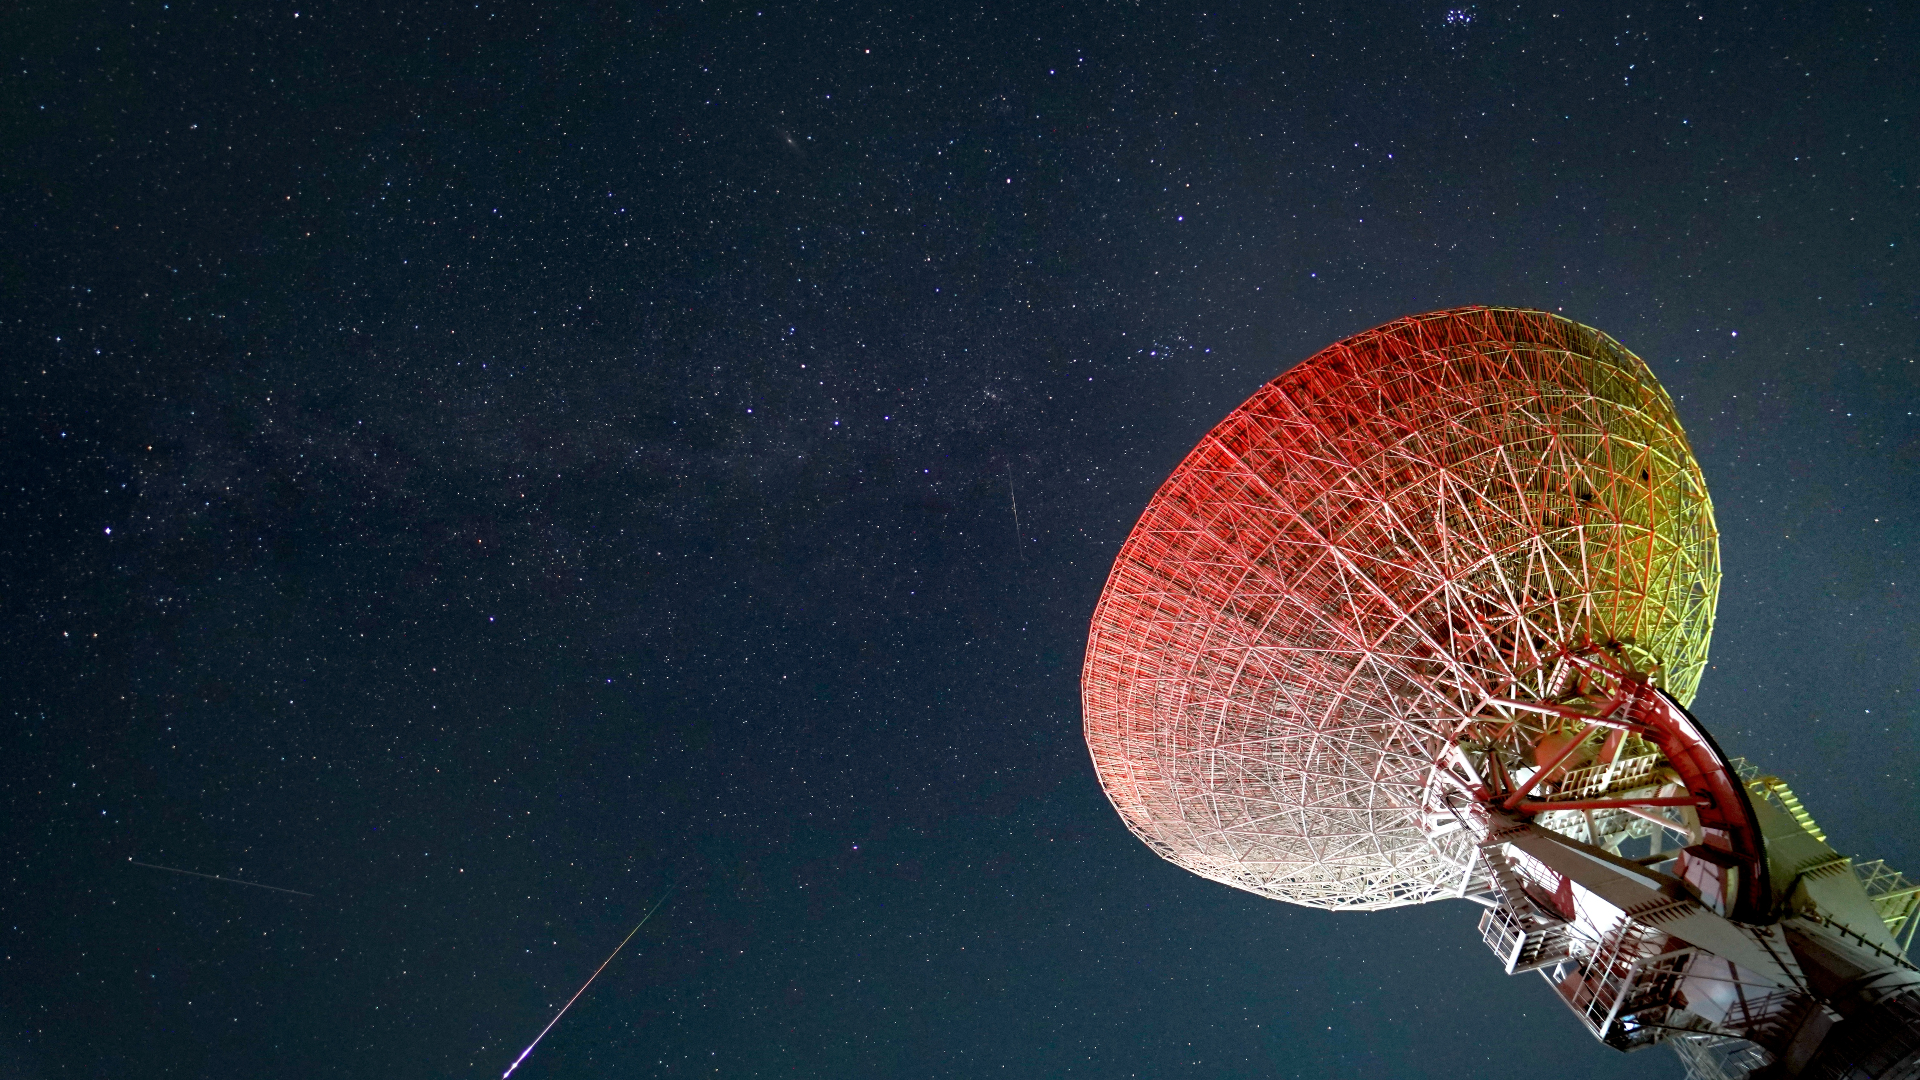 Helle Perseiden-Meteore streifen über den sternenübersäten Himmel mit einer großen Teleskopschüssel auf der rechten Seite des Bildes.